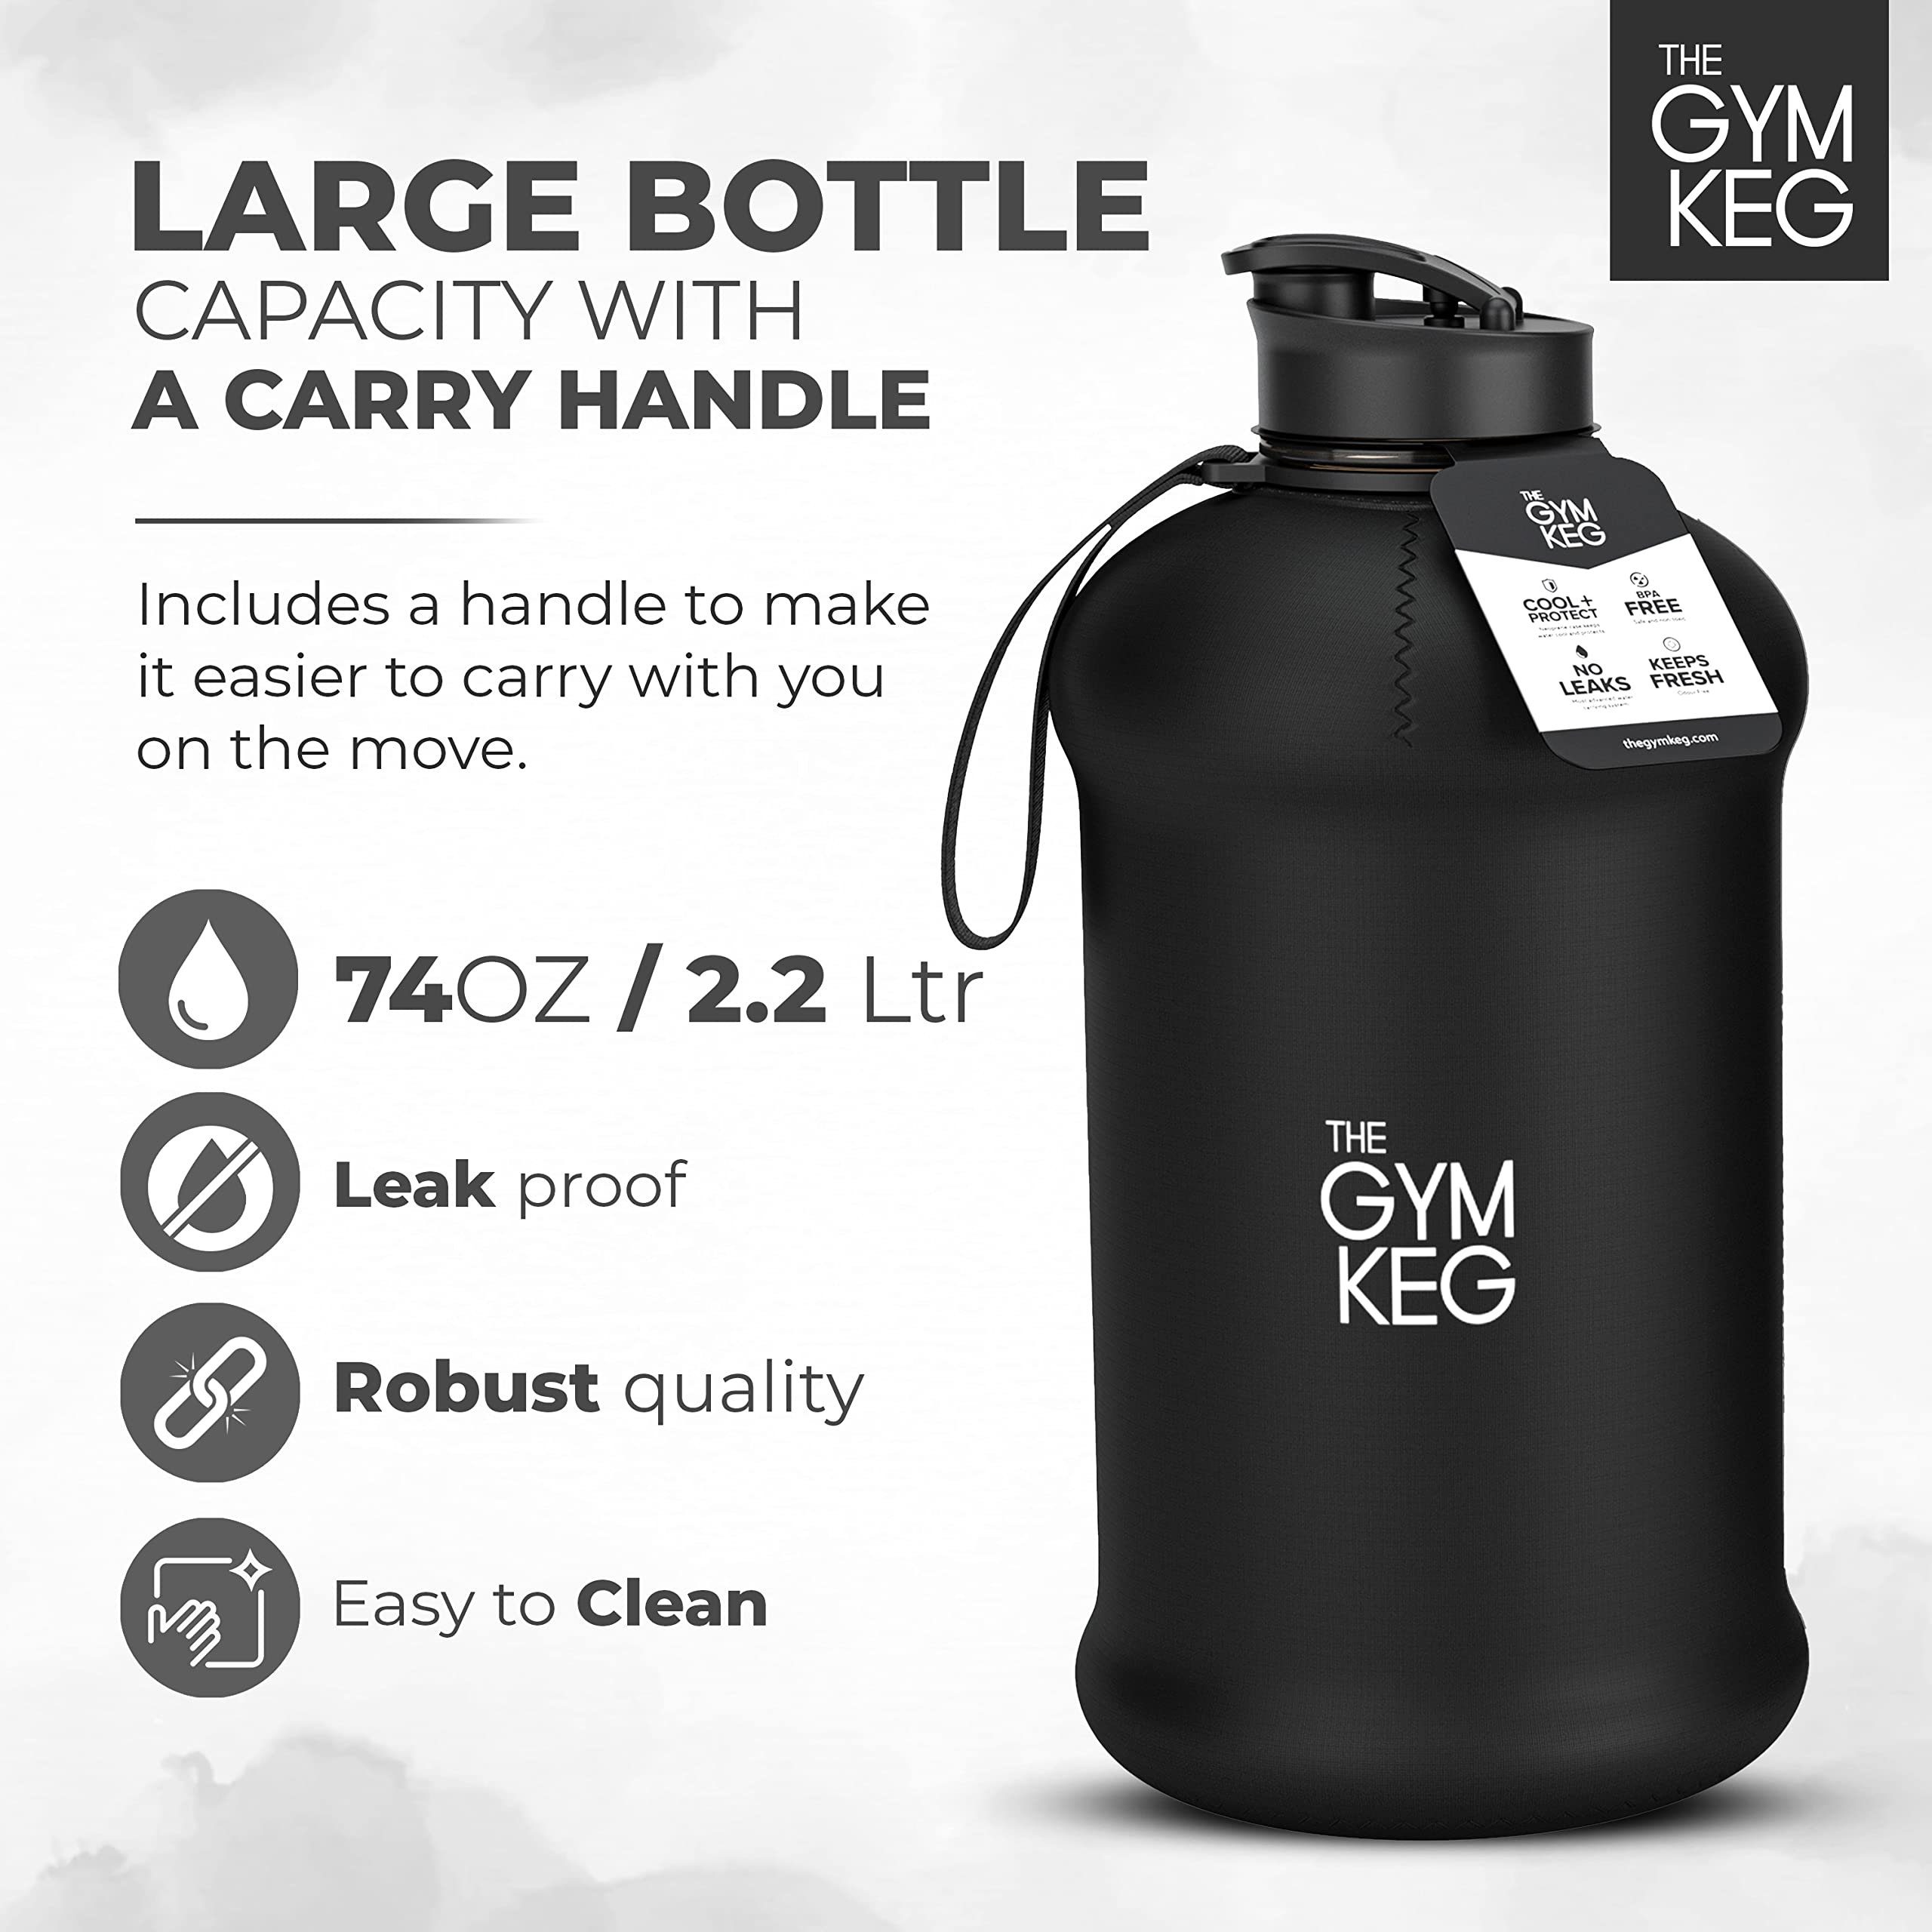 The Gym Keg Trinkflasche Neoprene Black 2.2L Sleeve mit Polyethylenterephthalat Wiederverwendbar, Liter Trinkflasche und Griff, Gym 2.2 Stealth